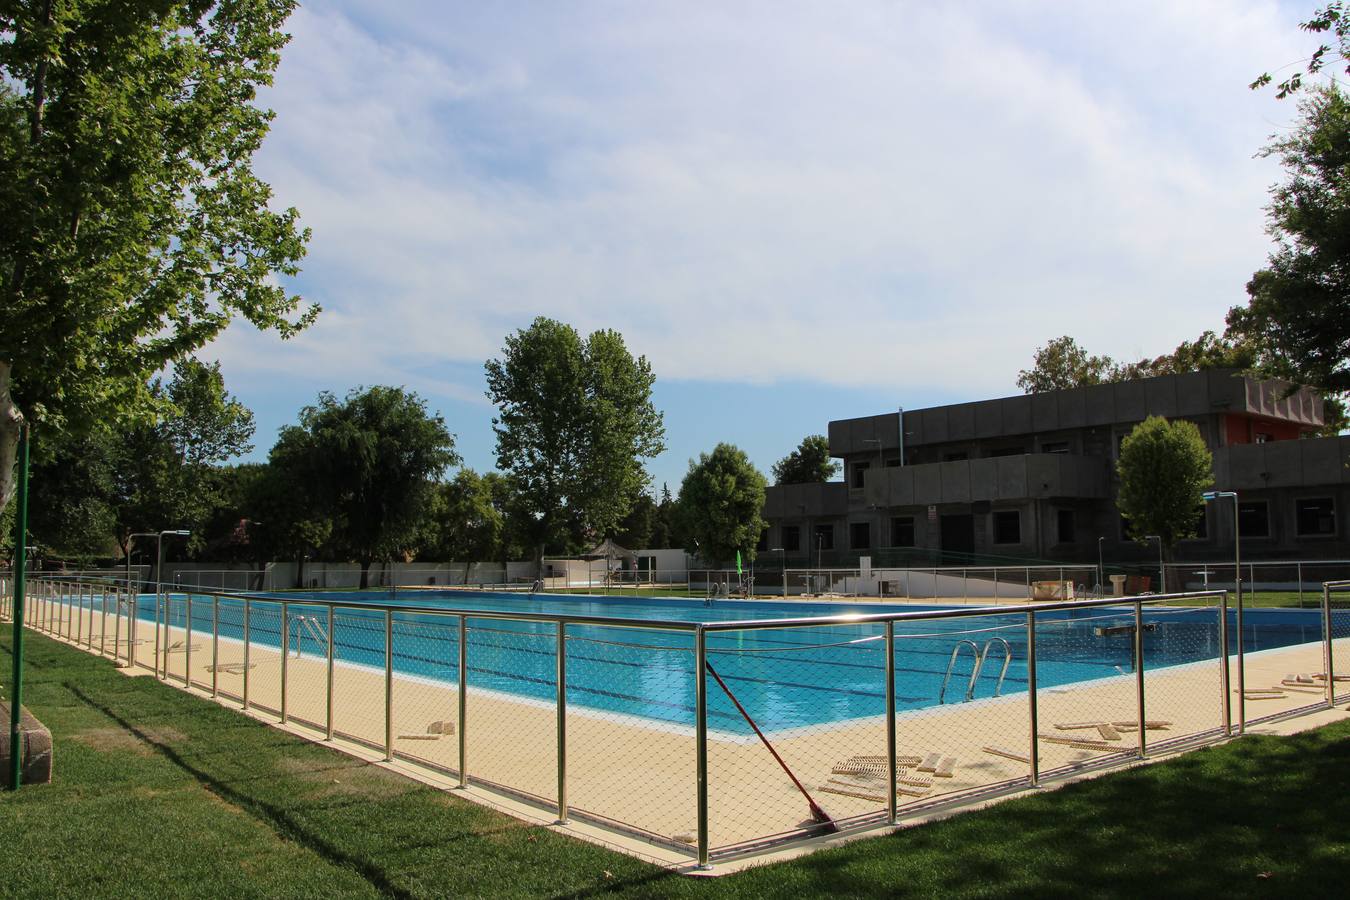 Aspecto de la piscina municipal tras la reforma acometida en sus instalaciones.